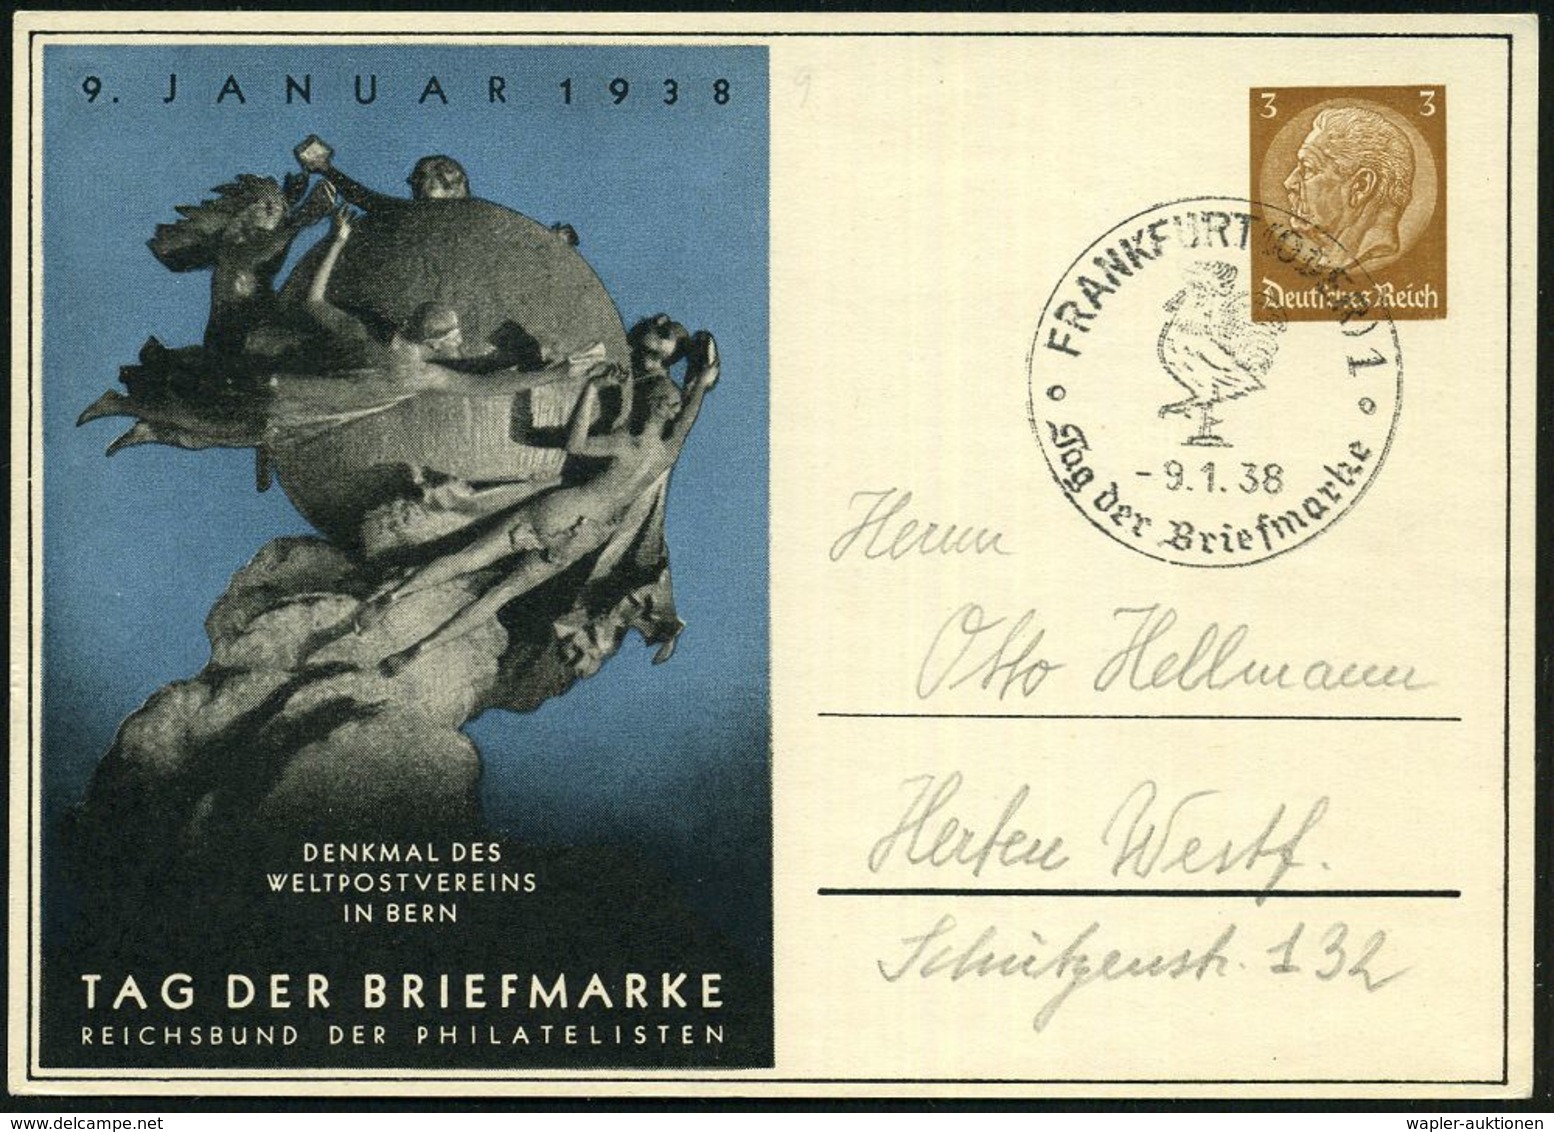 FRANKFURT (ODER) 1/ Tag Der Briefmarke 1938 (9.1.) SSt = Hahn Auf Passender PP 3 Pf. Hindenbg., Braun: TAG DER BRIEFMARK - Giornata Del Francobollo